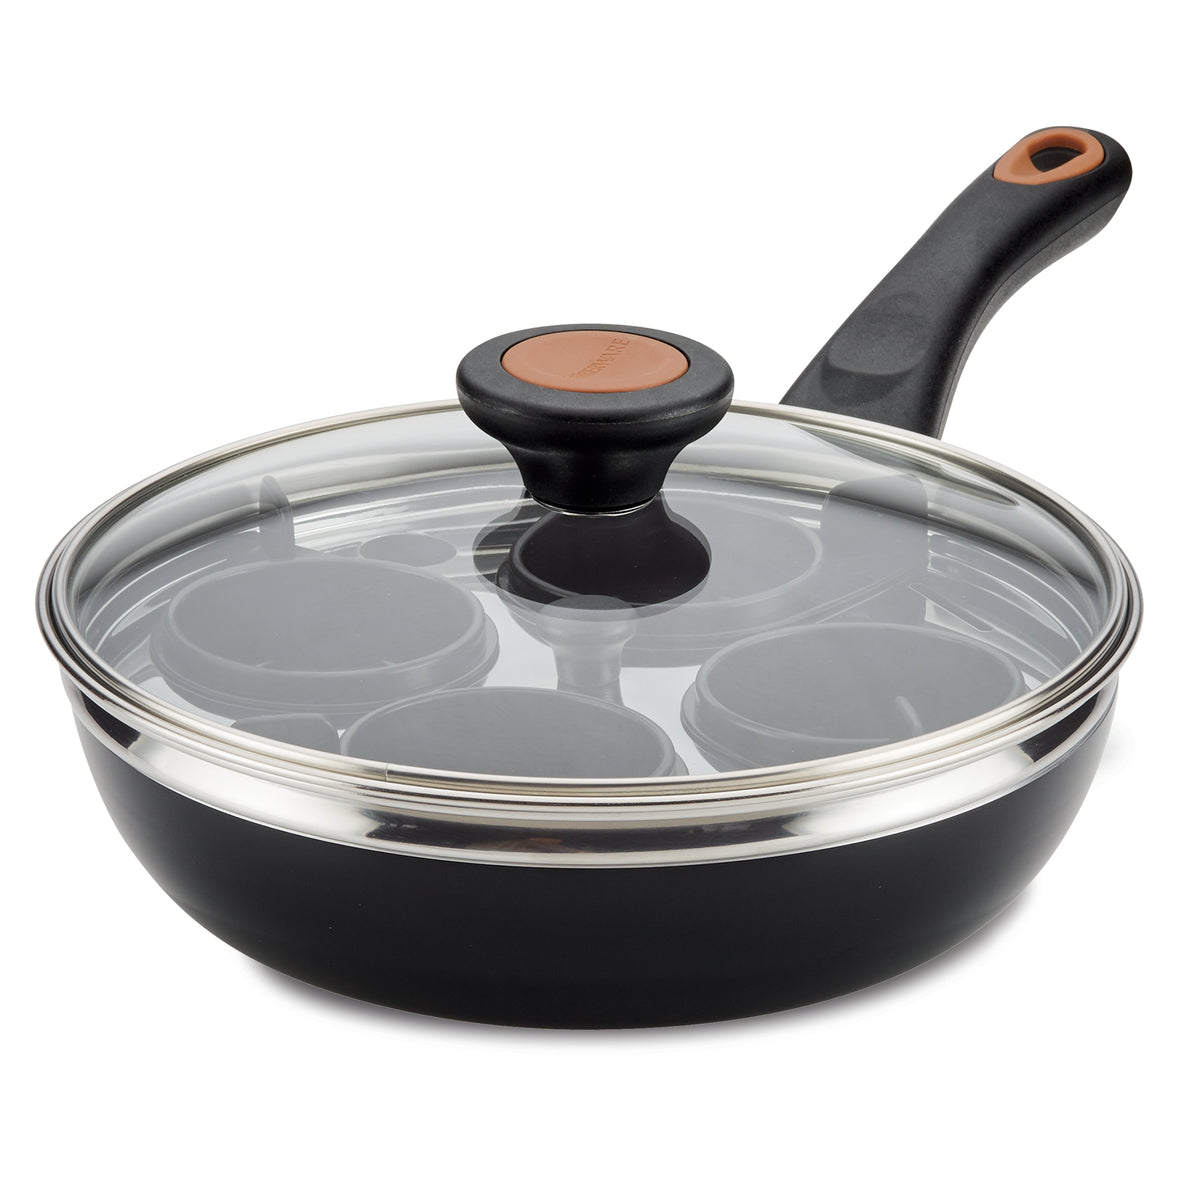 nonstick frying pans Outdoor Cooking Pan Egg Poaching Pan Stovetop Grill Pan